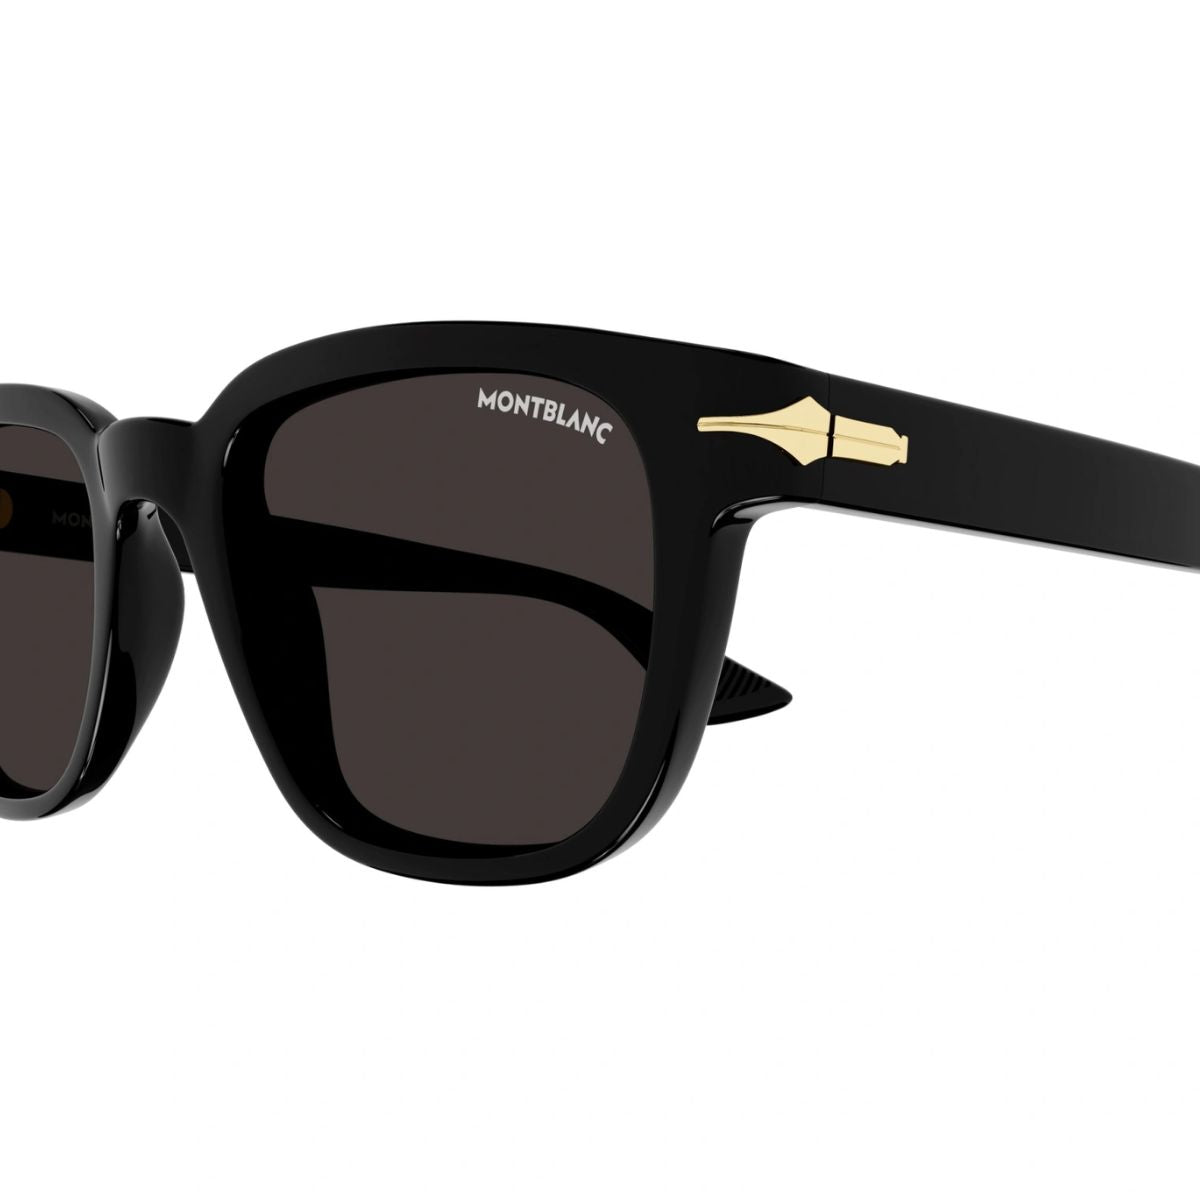 "Shop Original Mont Blanc Square Sunglasses For Mens At optorium"